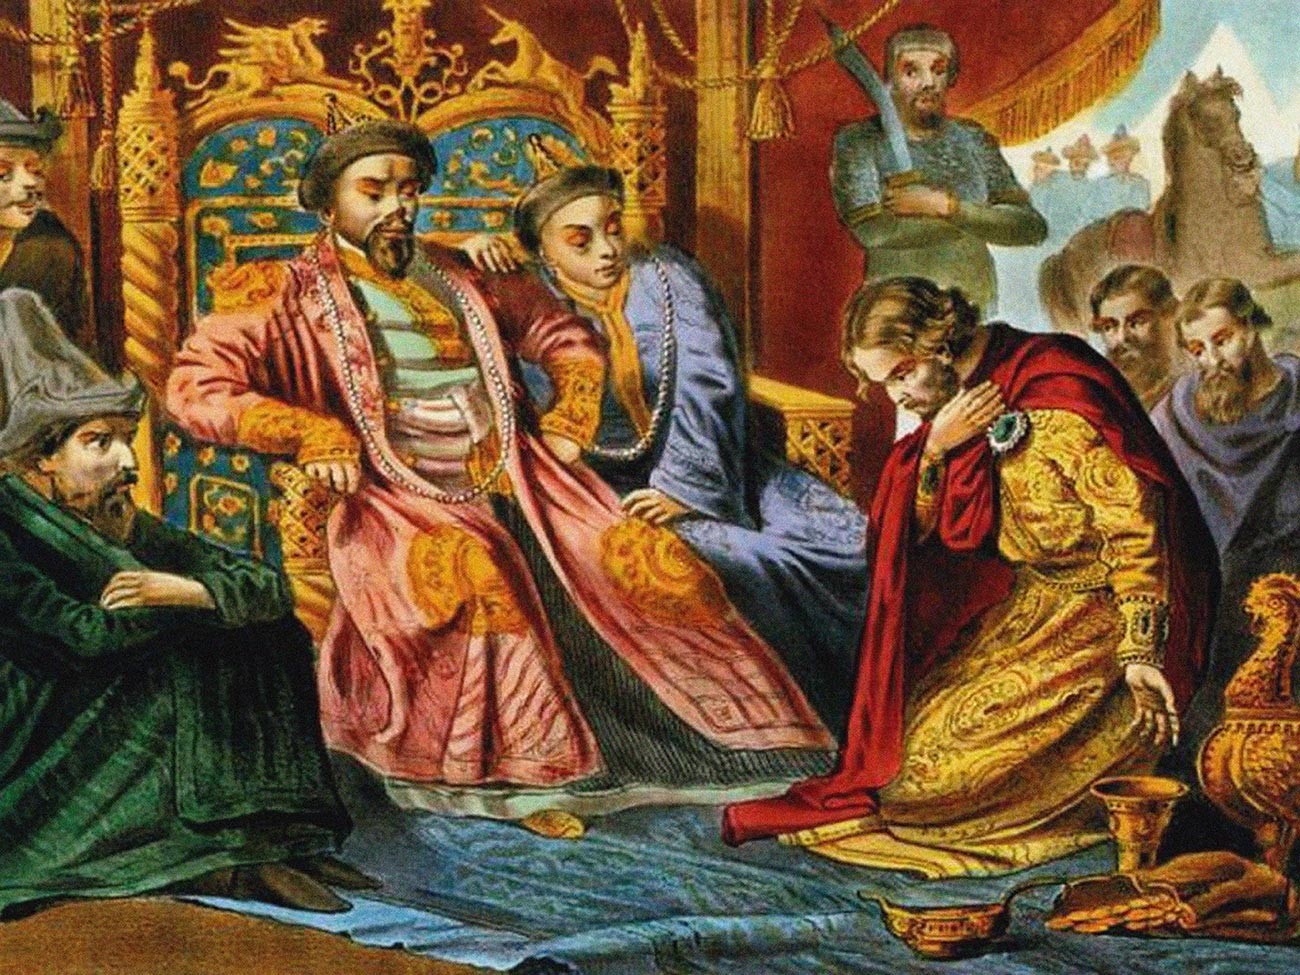 O Príncipe Aleksandr Niévski implorando a Batu Cã que tivesse misericórdia quanto à Rússia, em pintura do final do século 19. Obra encontrada na coleção da Biblioteca Estatal Russa, em Moscou.